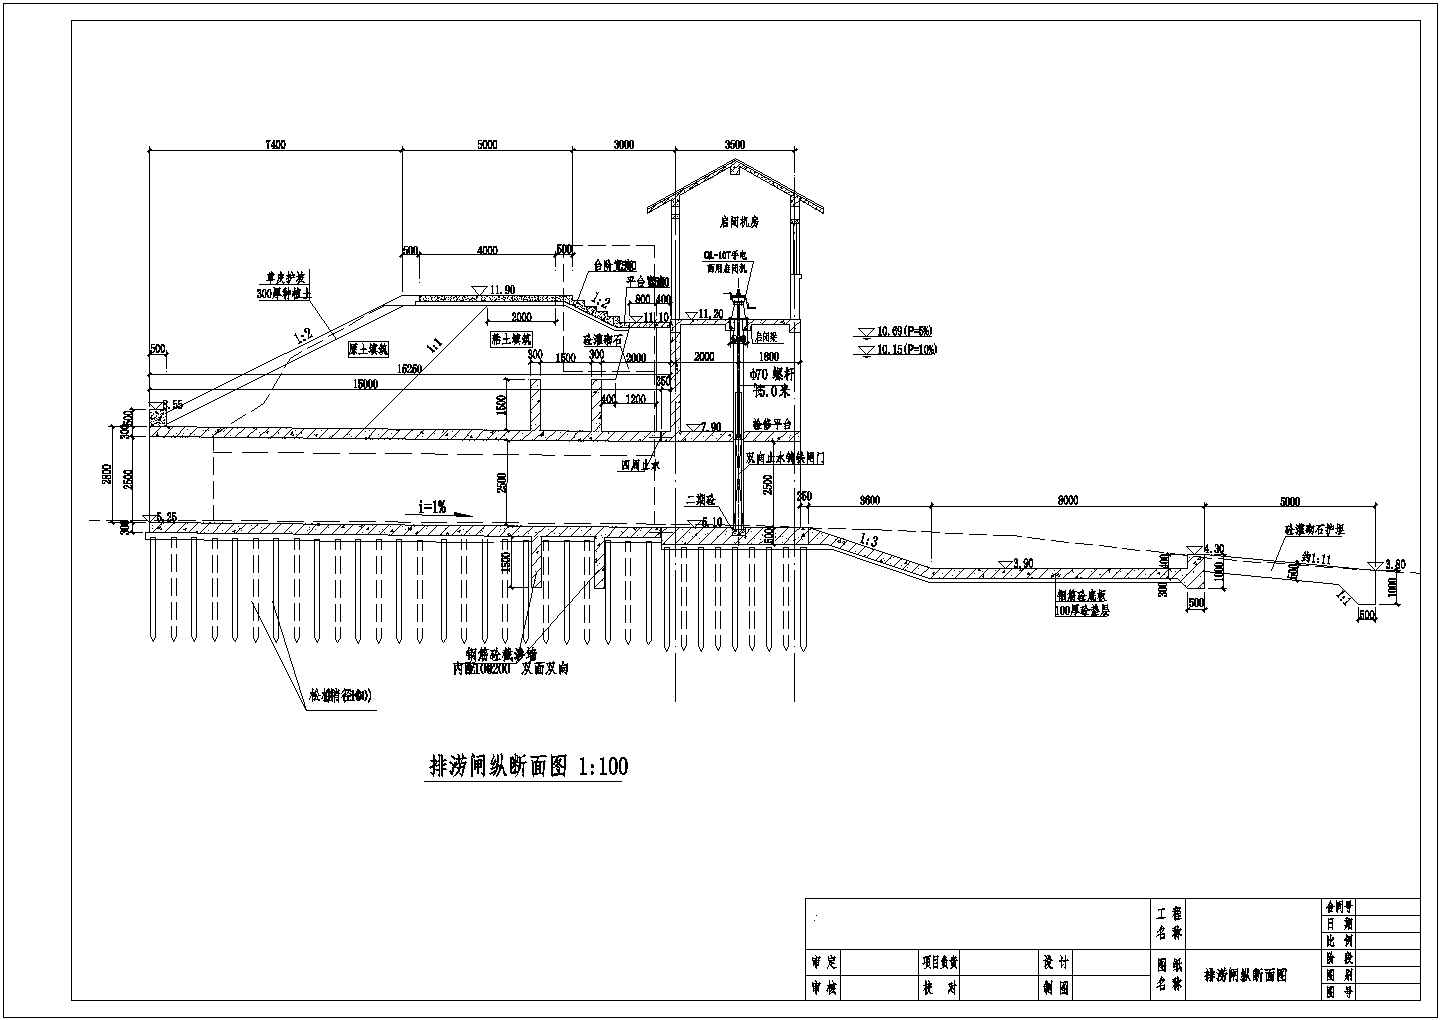 2.5*2.5米水闸的施工图阶段使用